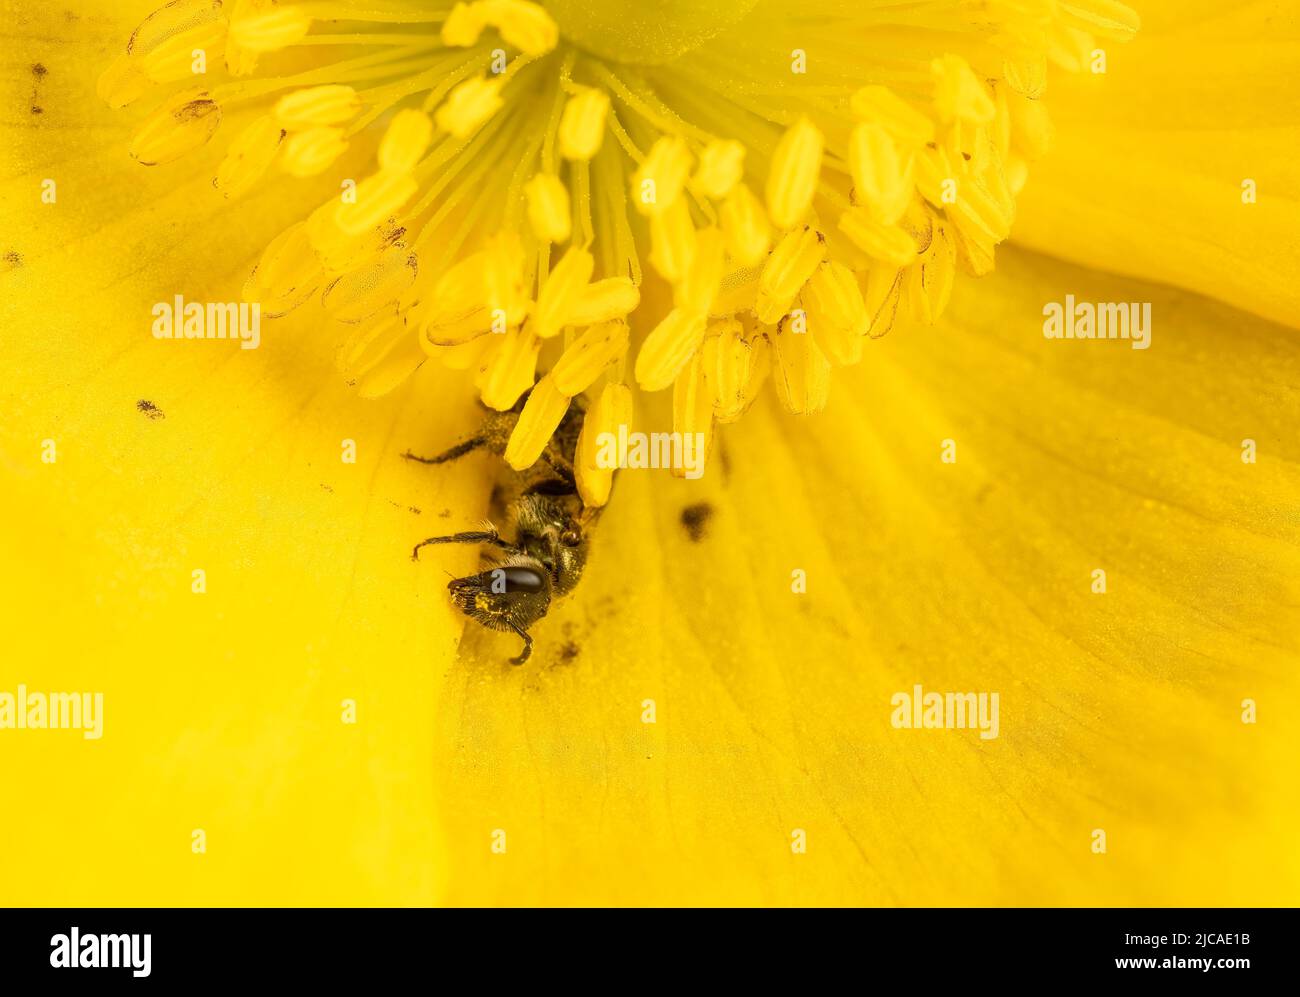 Un pequeño surco de bronce en una amapola amarilla, cubierto de polen, que muestra cuán útil es la poca diversidad conocida de abejas solitarias en términos de polinización. Foto de stock